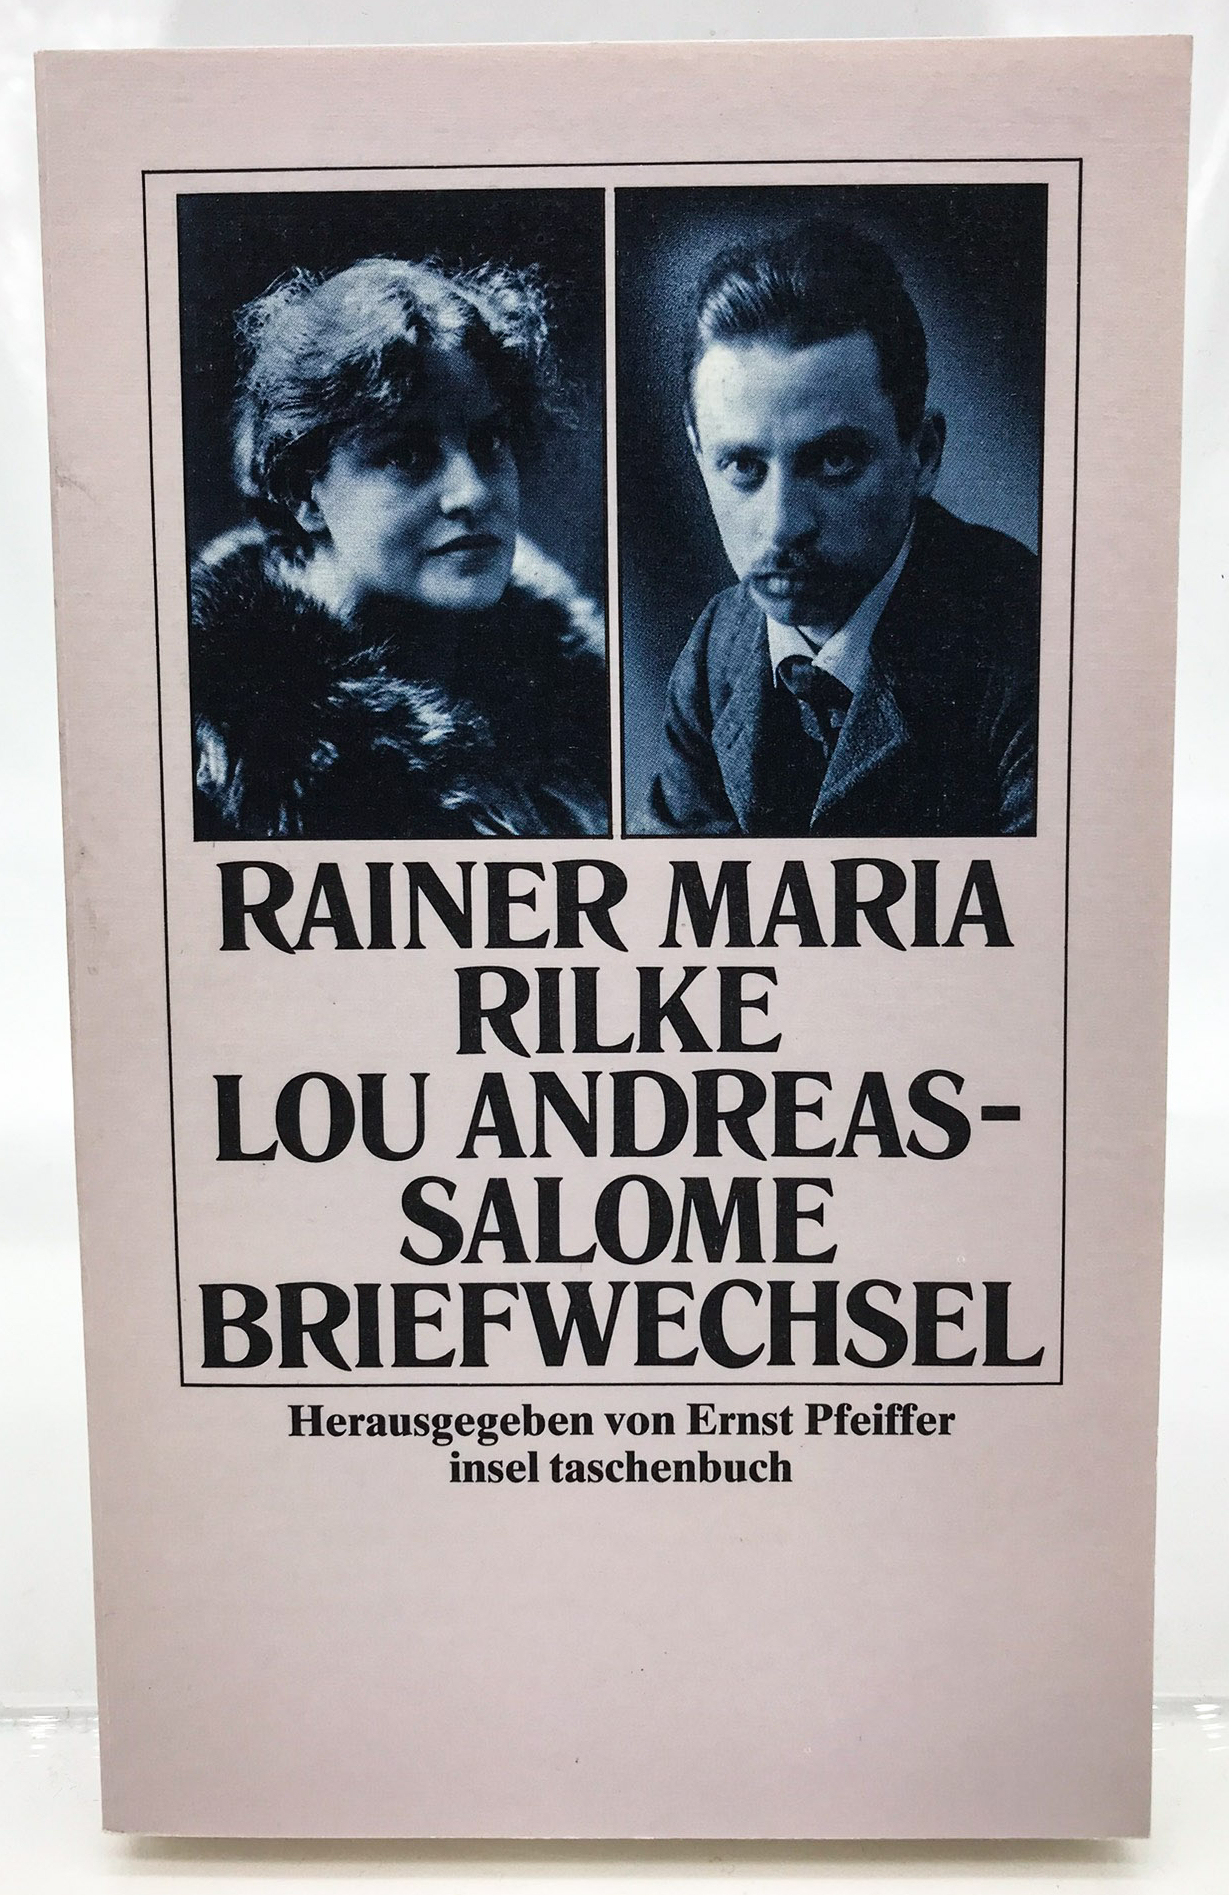 Briefwechsel - Rilke, Rainer Maria, Lou Andreas-Salomé  und Ernst Pfeiffer [Hrsg.]